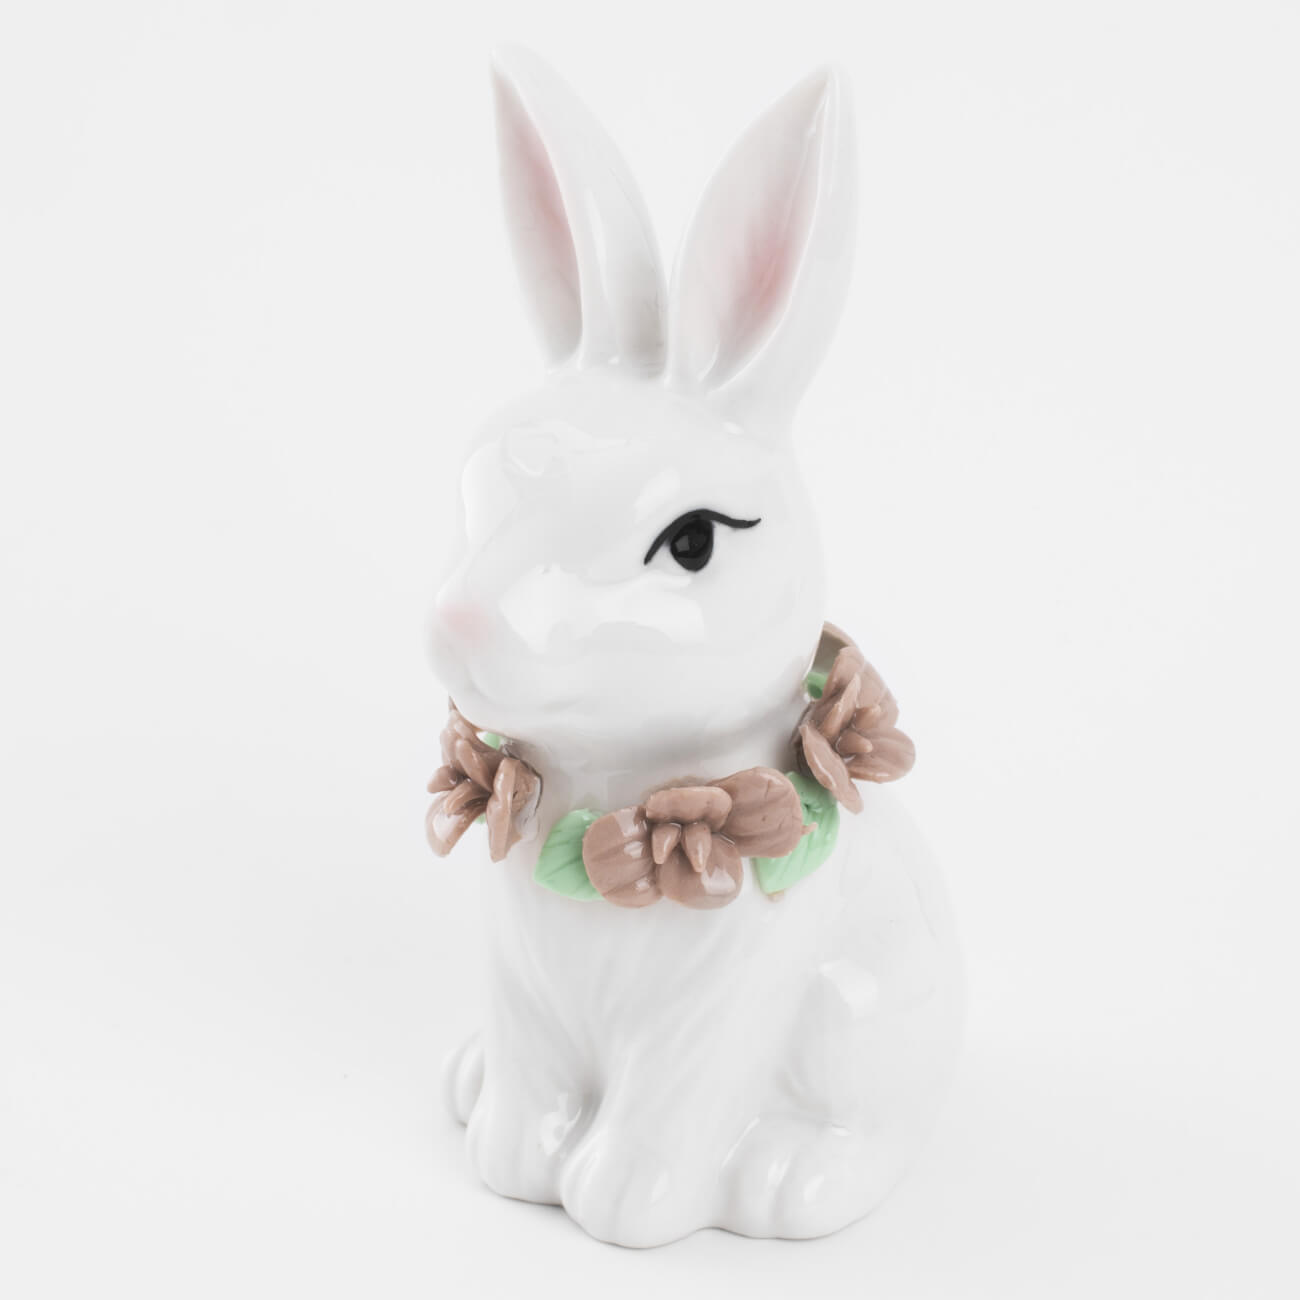 Статуэтка, 12 см, фарфор P, белая, Кролик в цветах, Easter blooming емкость для соли или перца 10 см фарфор p молочная в крапинку кролик natural easter